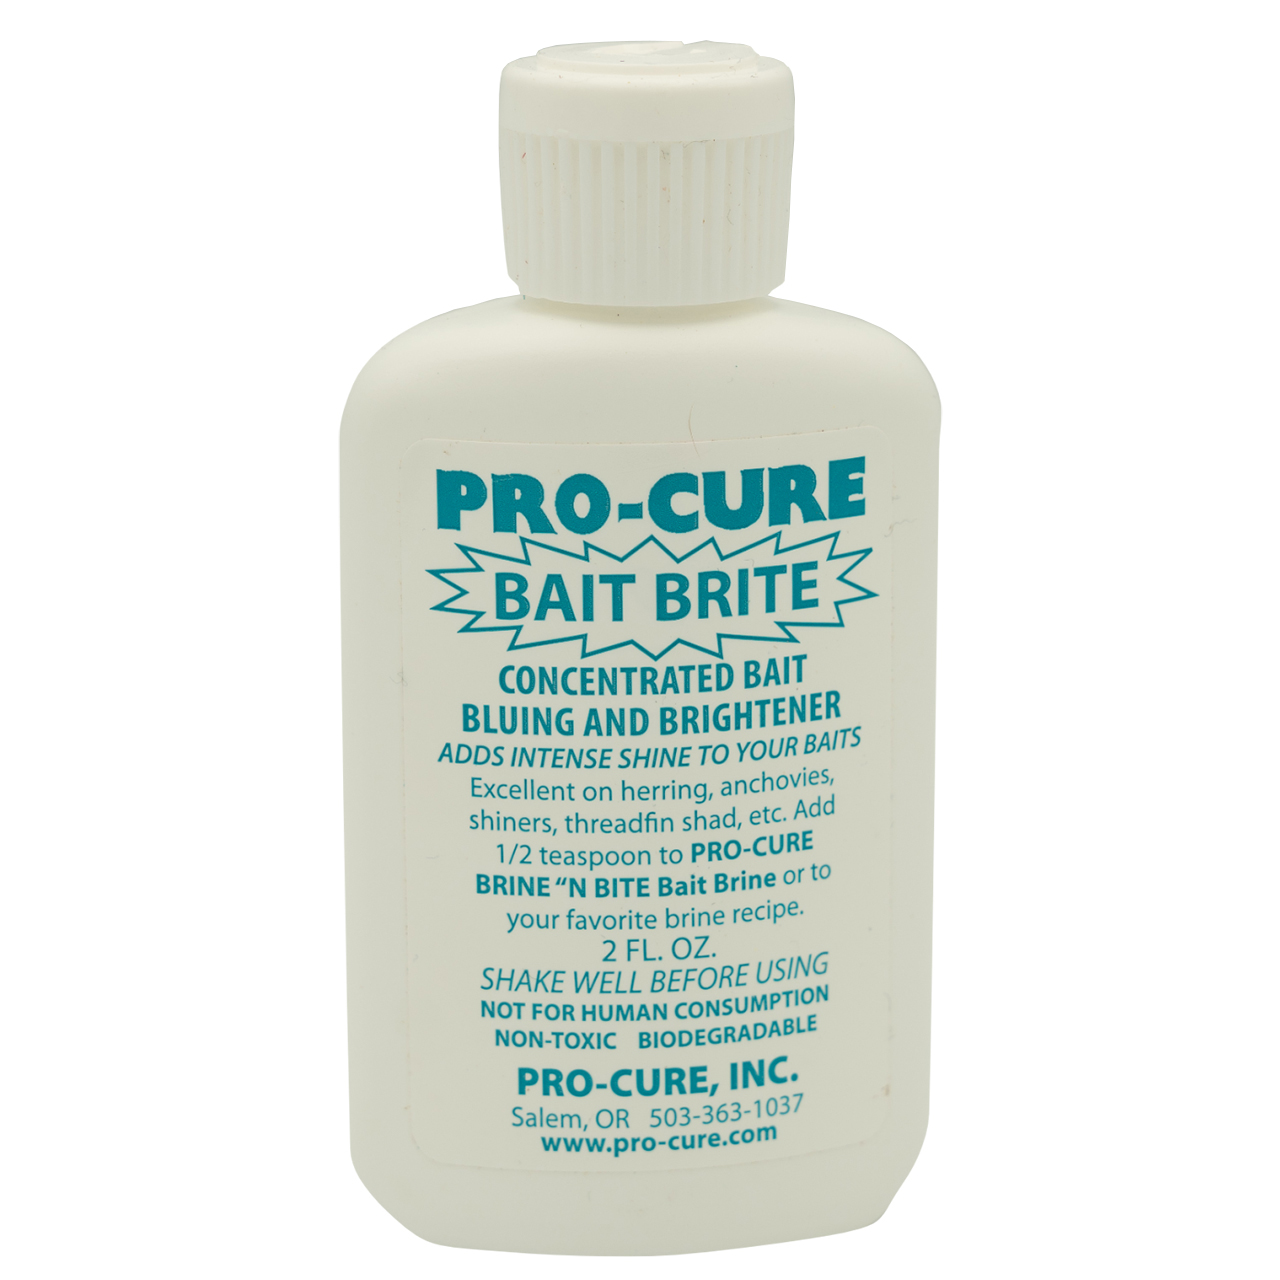 Pro-Cure Bait Brite